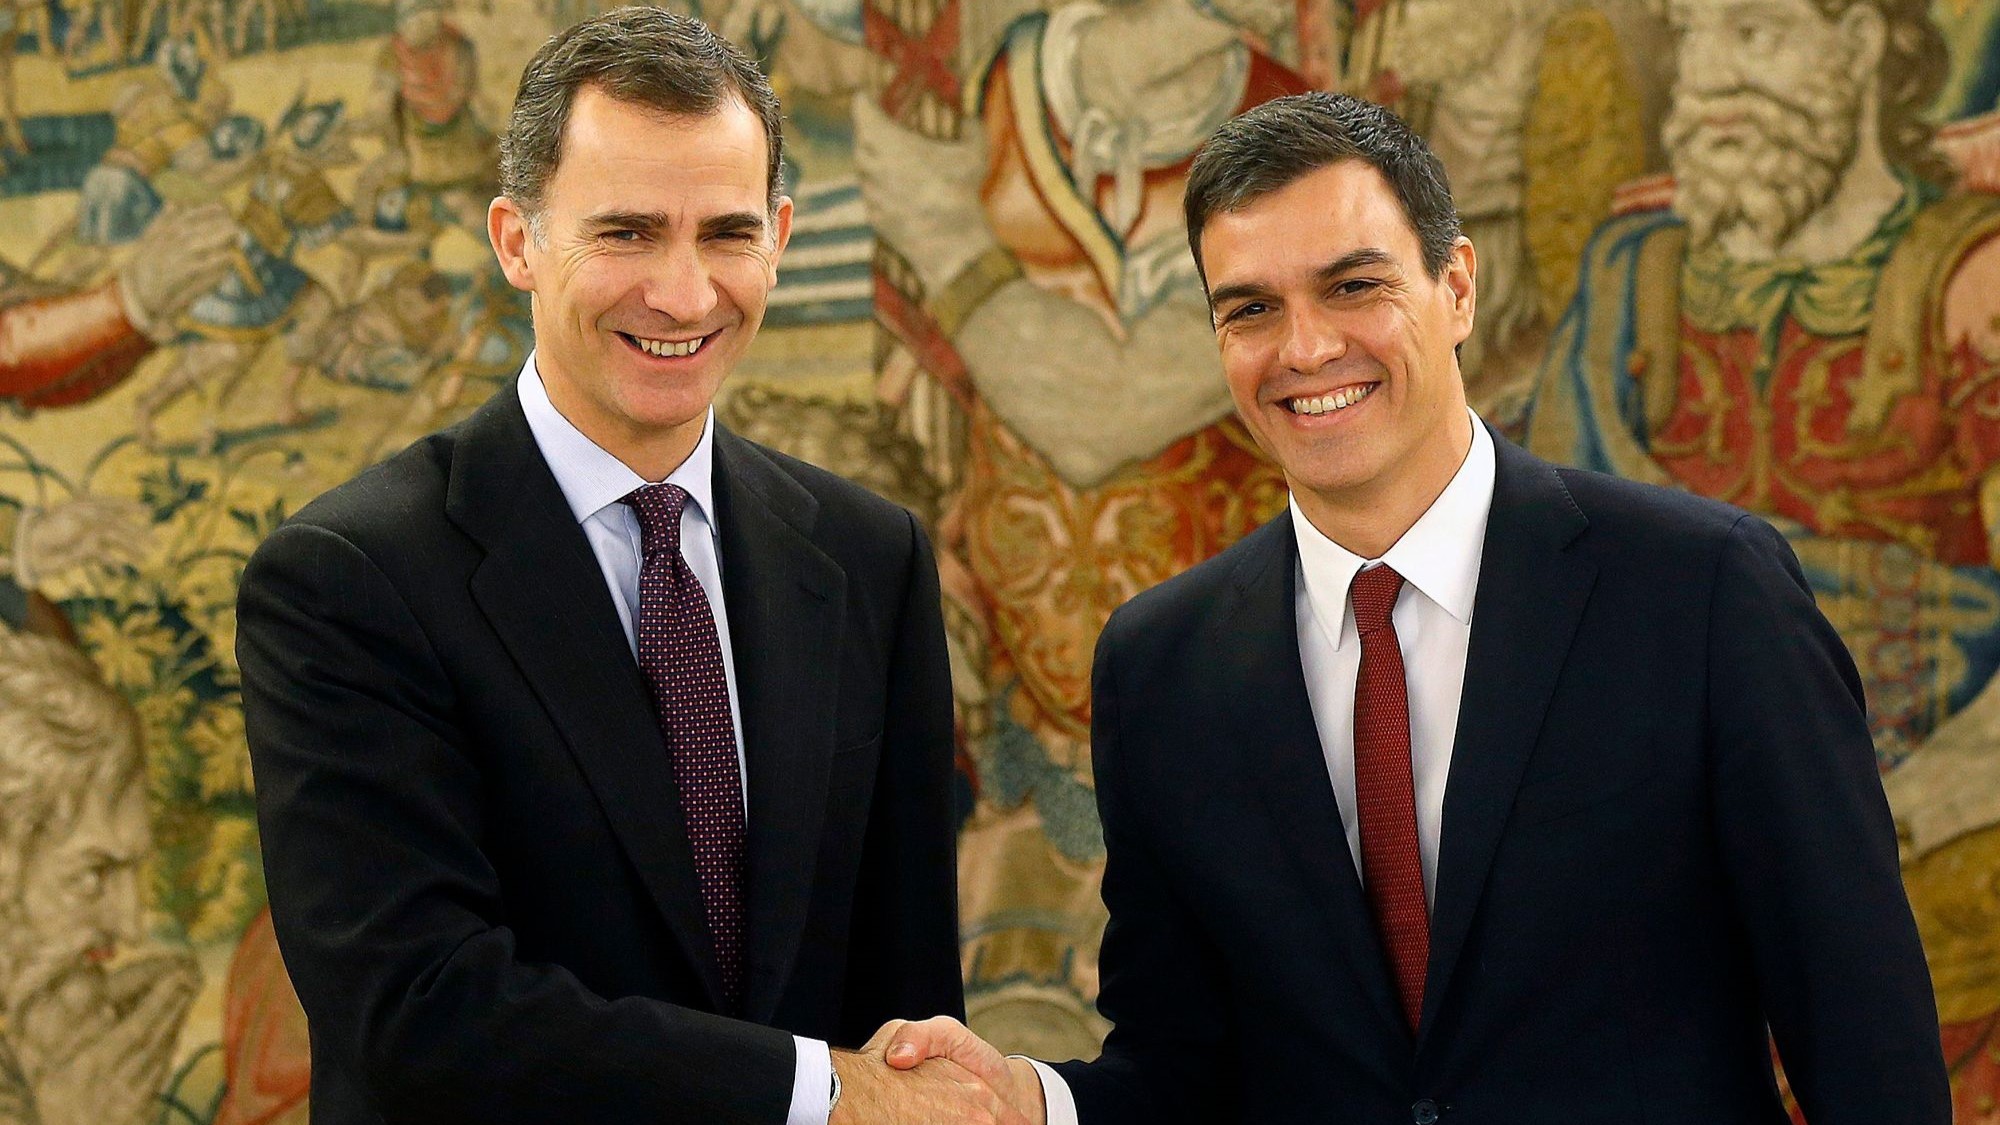 Pedro Sanchez prête serment devant le Roi Felipe VI d'Espagne après son investiture au Parlement 